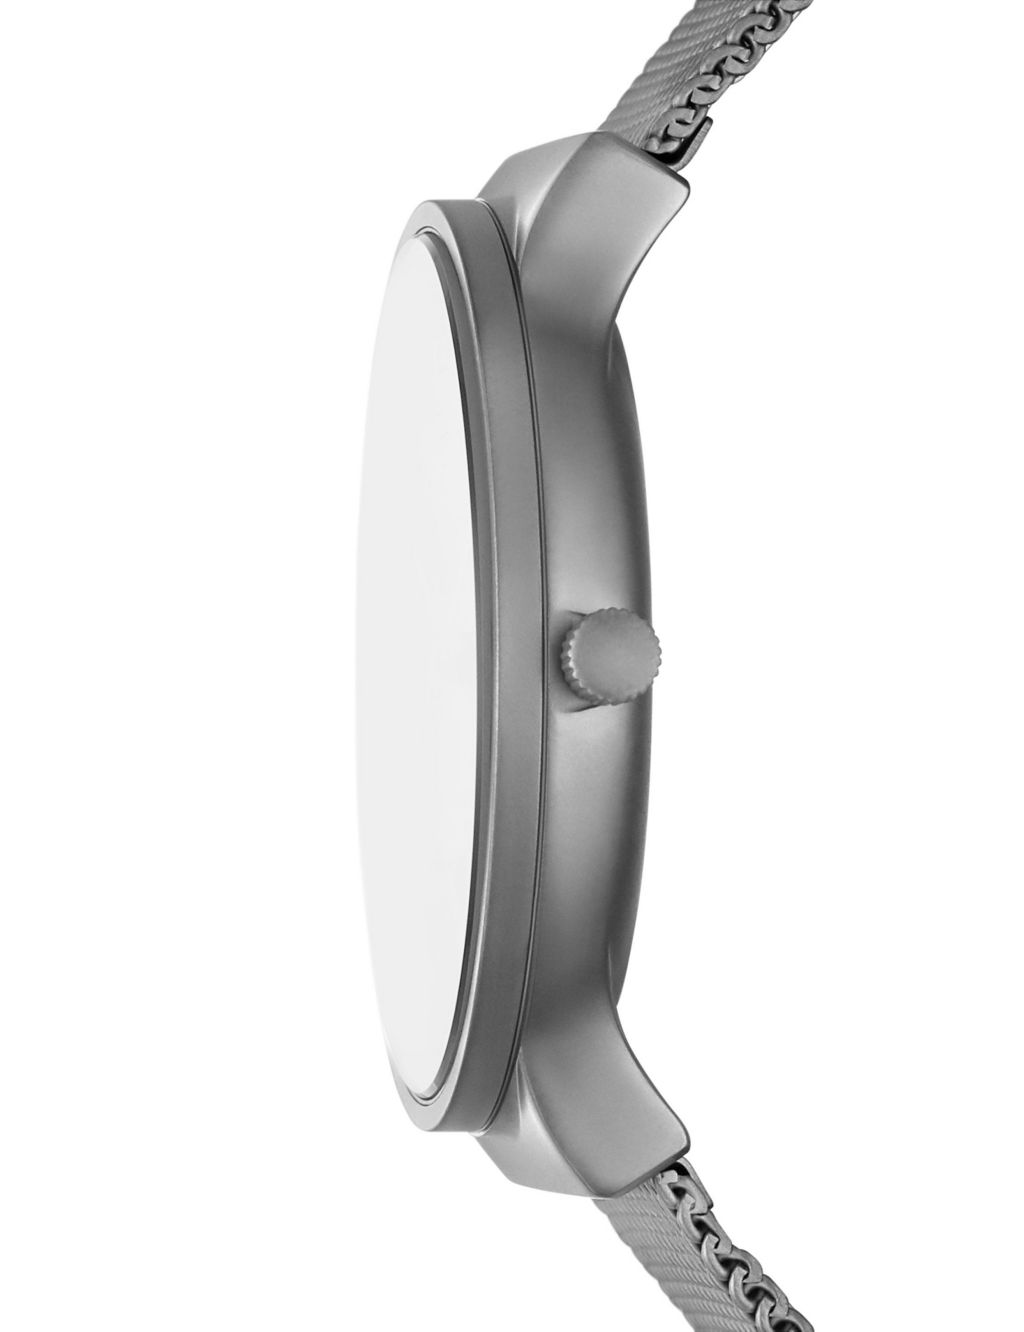 Skagen Anchor Grey Stainless Steel Bracelet Quartz Watch image 3